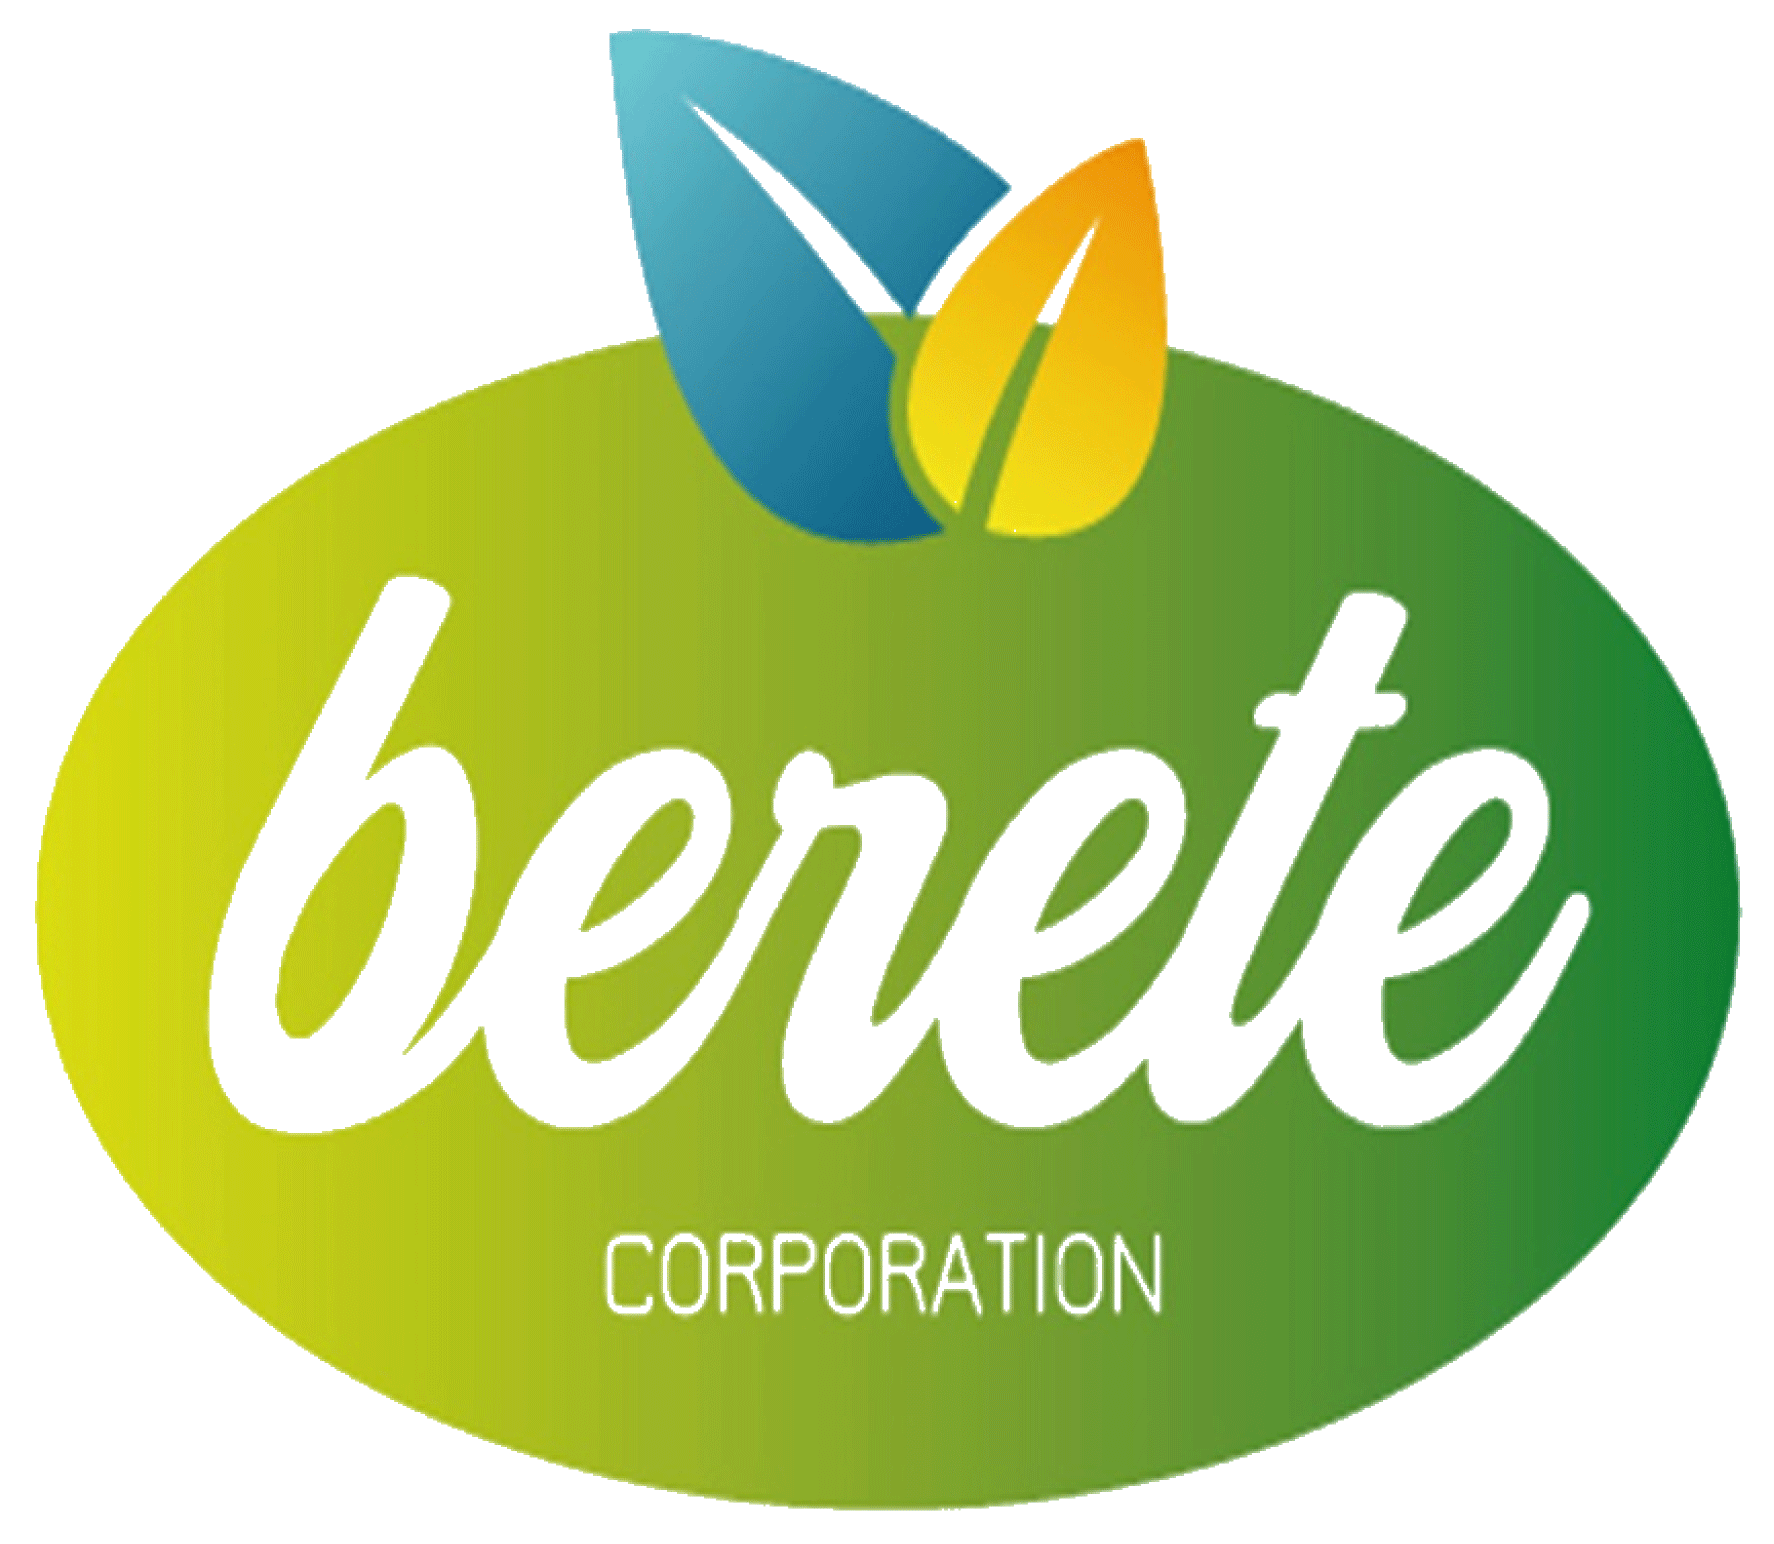 Bérété Corporation